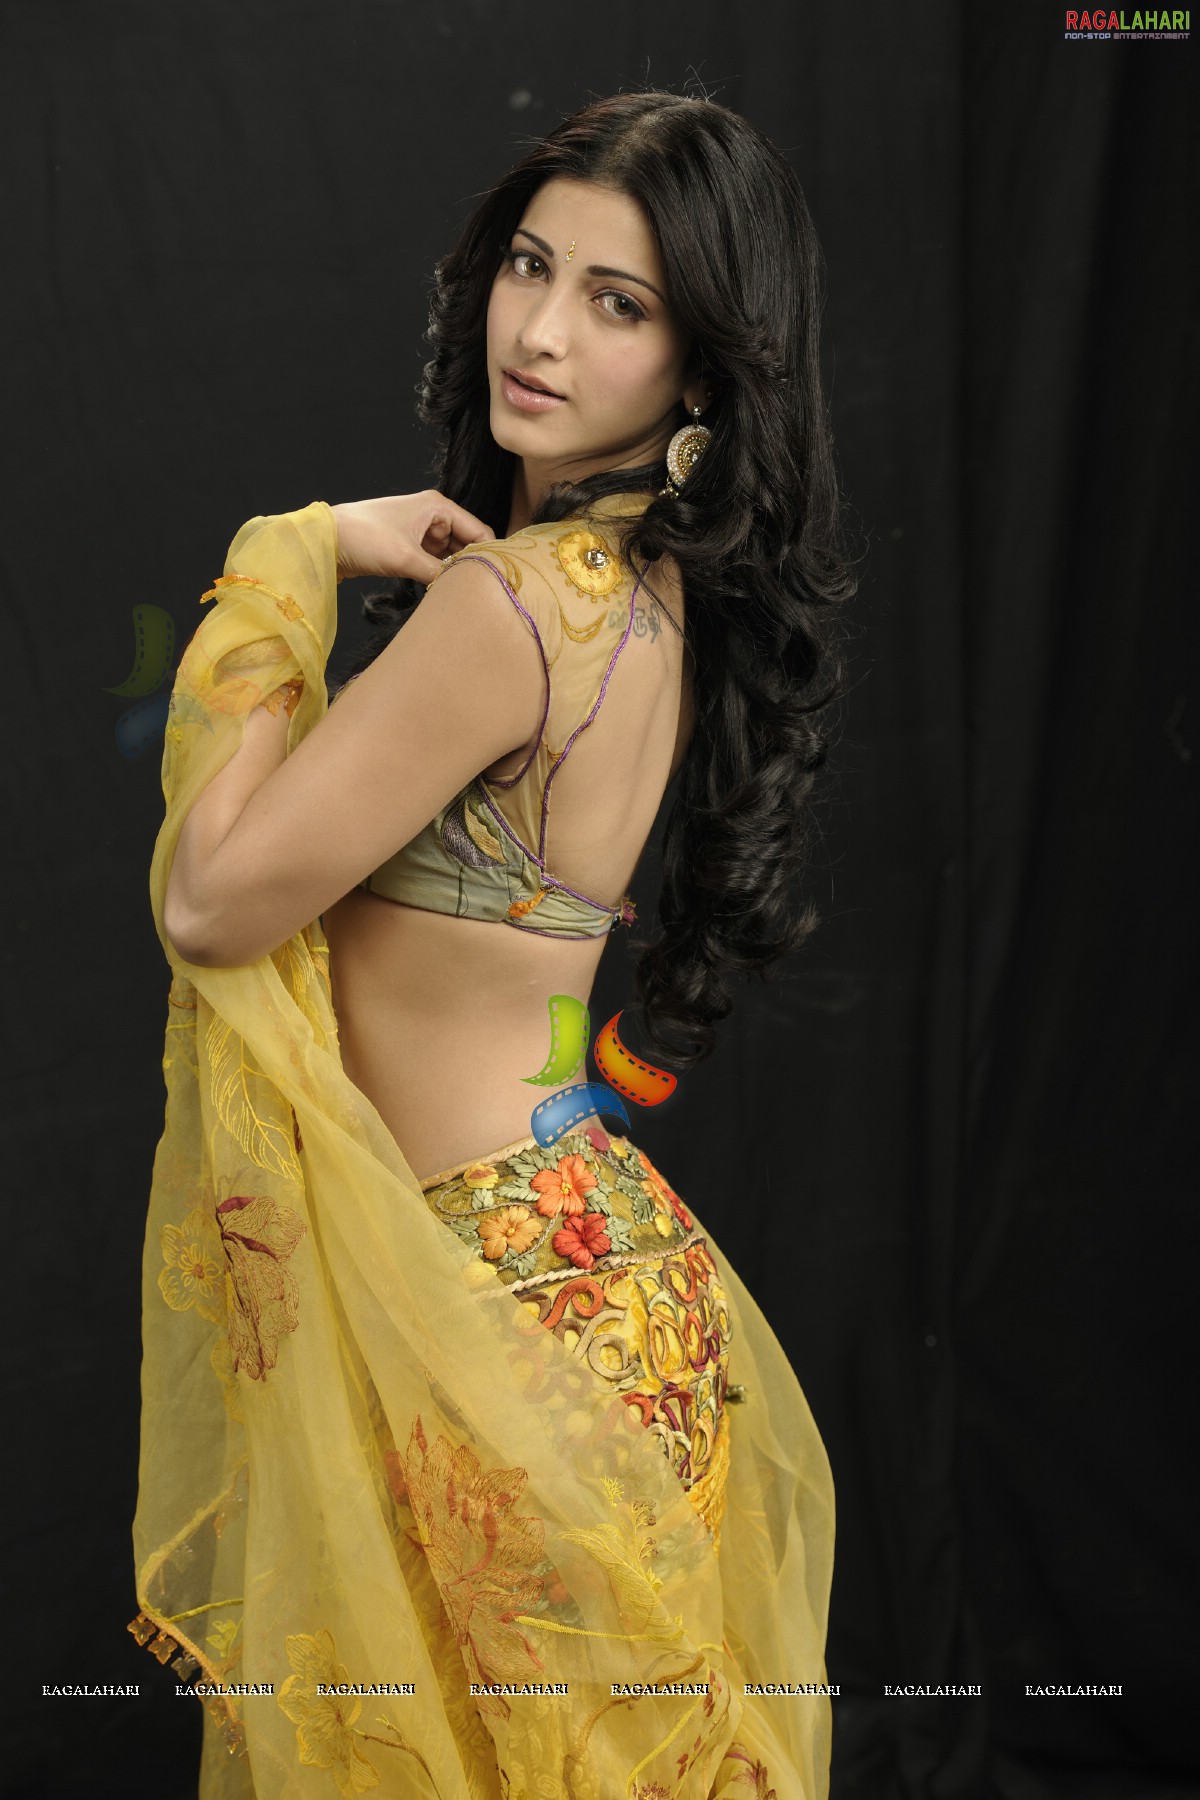 August cover-star Shruti Haasan raises the style bar!